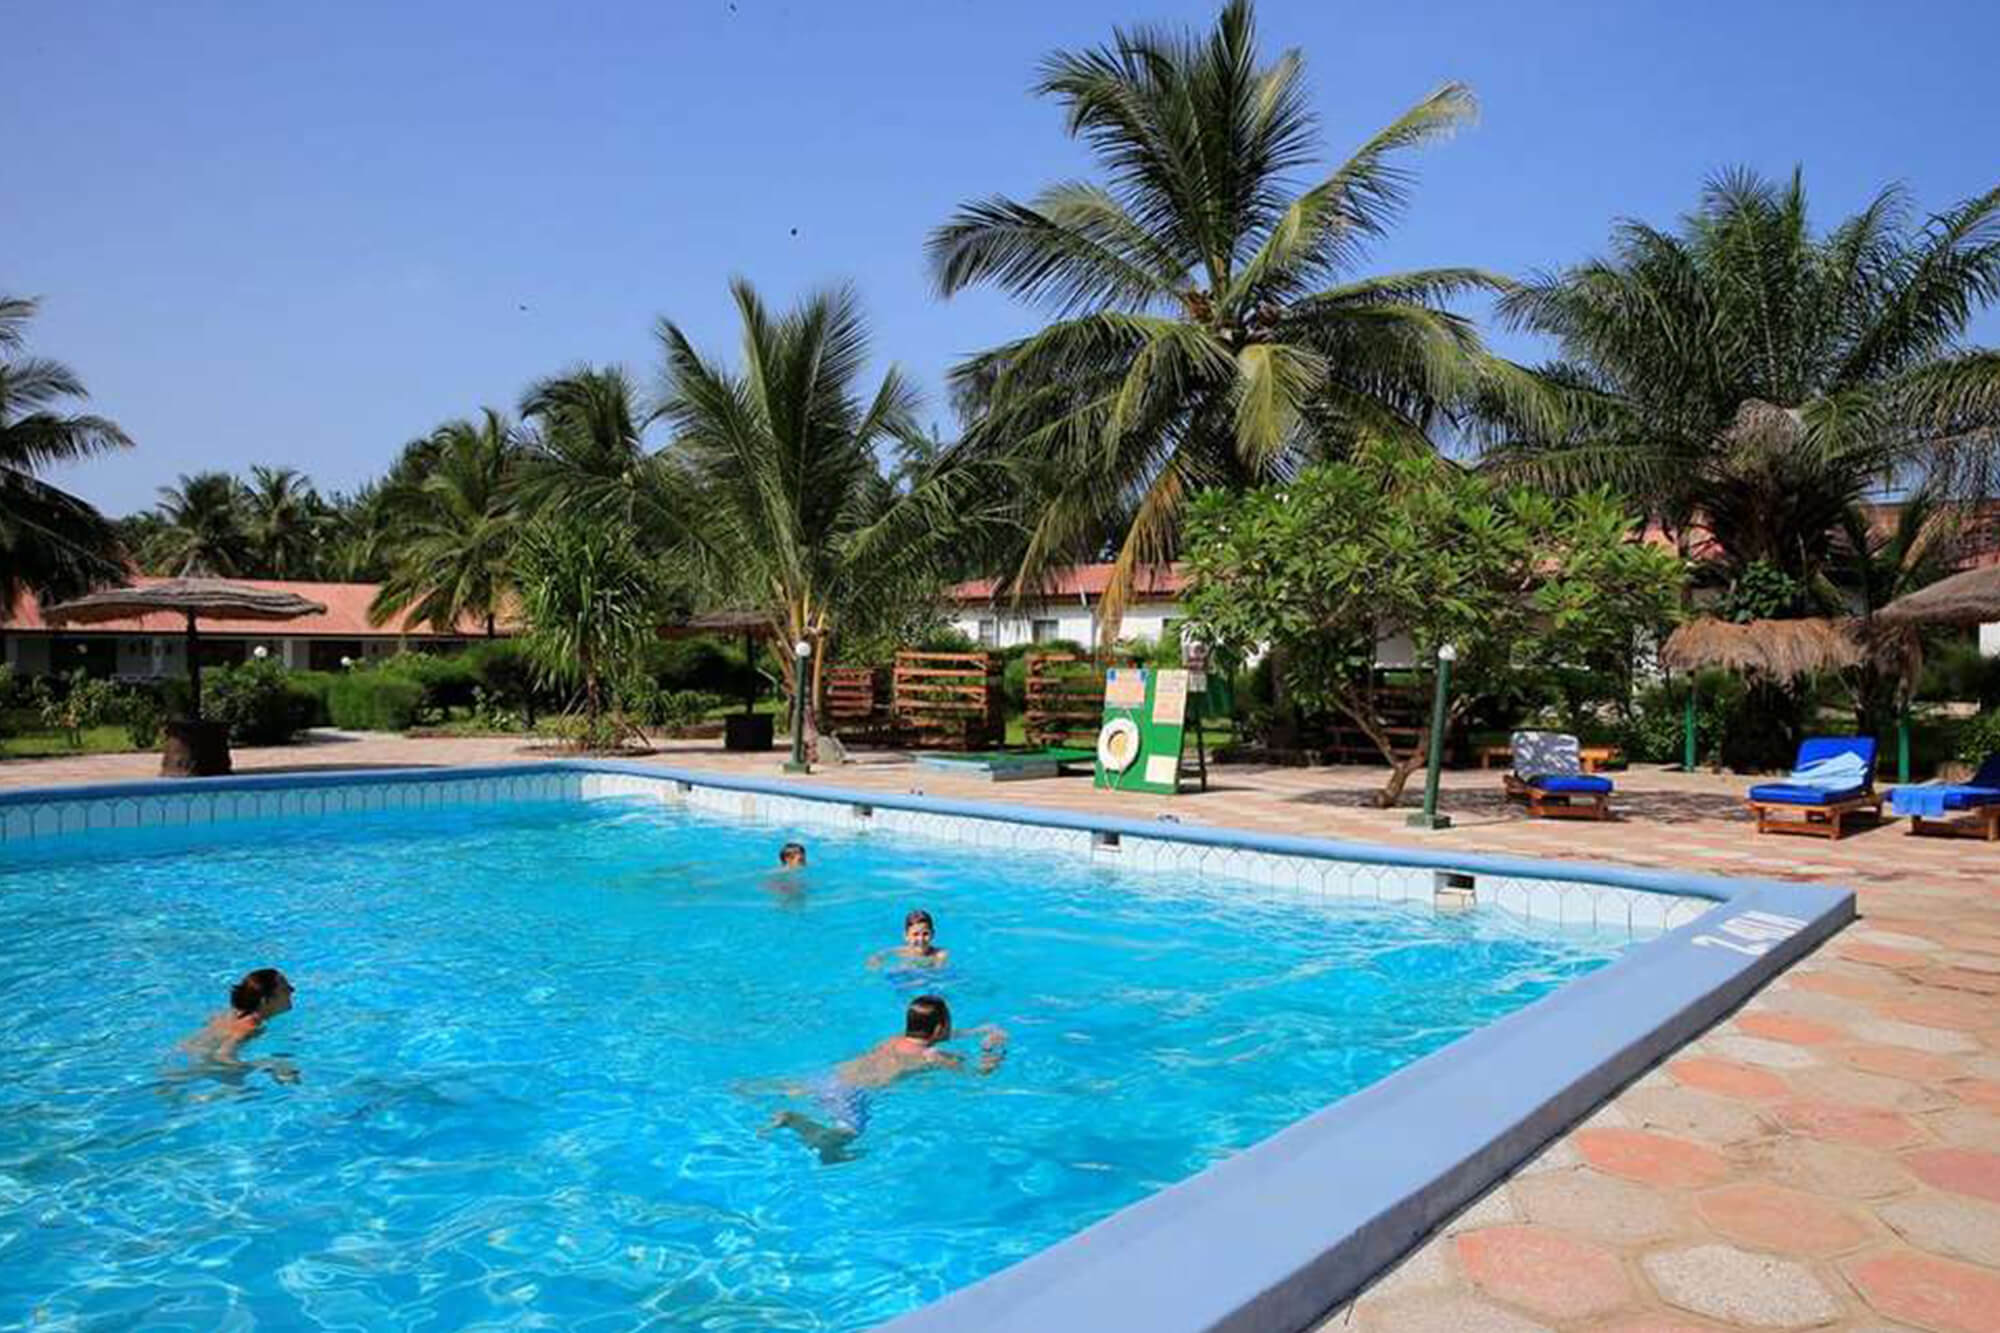 Zwemmen in het zwembad van het Holiday Beach Club hotel, Gambia